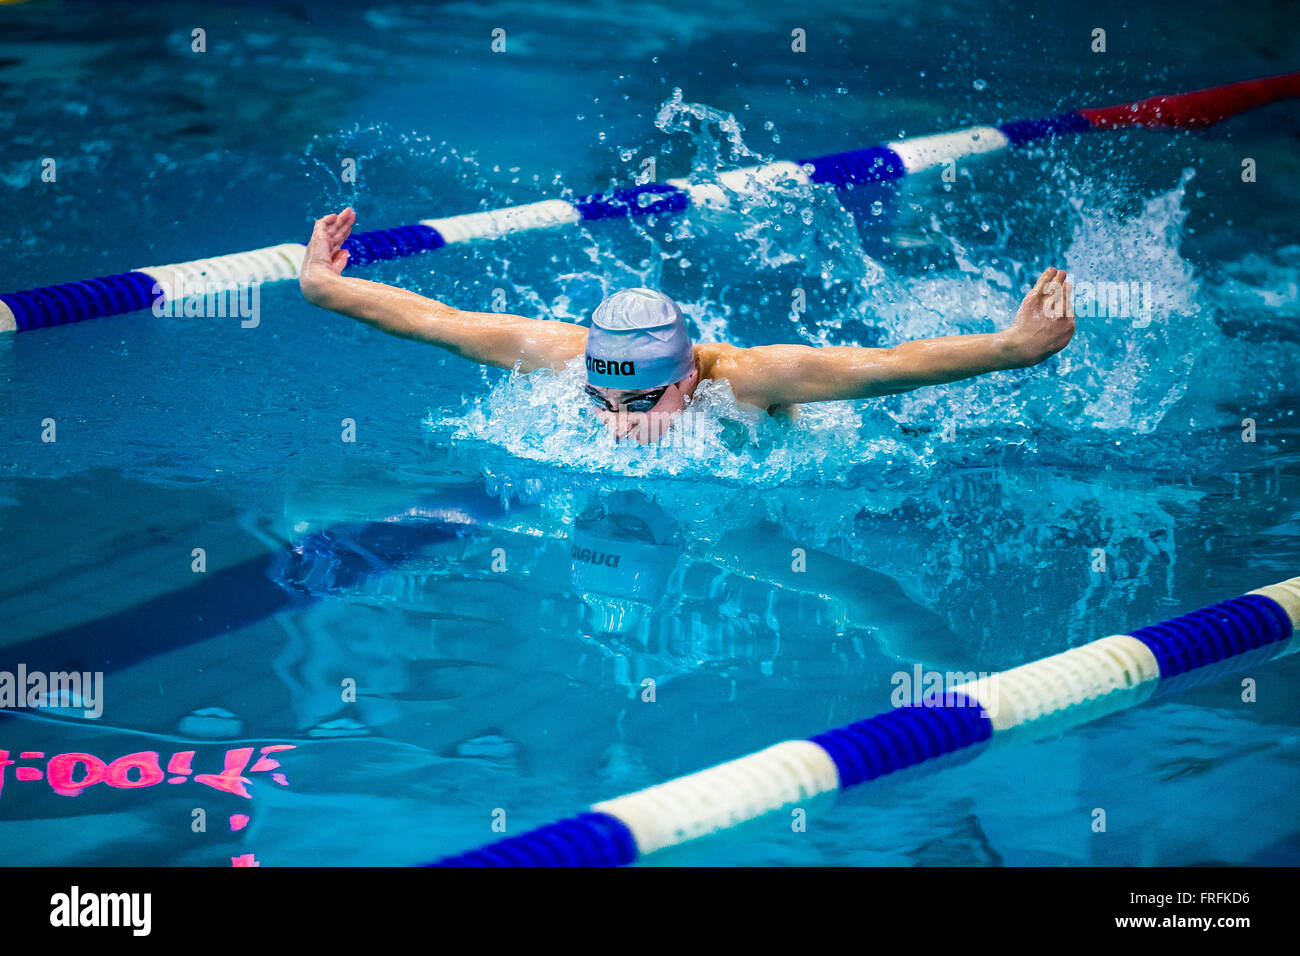 Giovane atleta nuotatore butterfly nella sprint in piscina durante il nuoto internazionale torneo Foto Stock